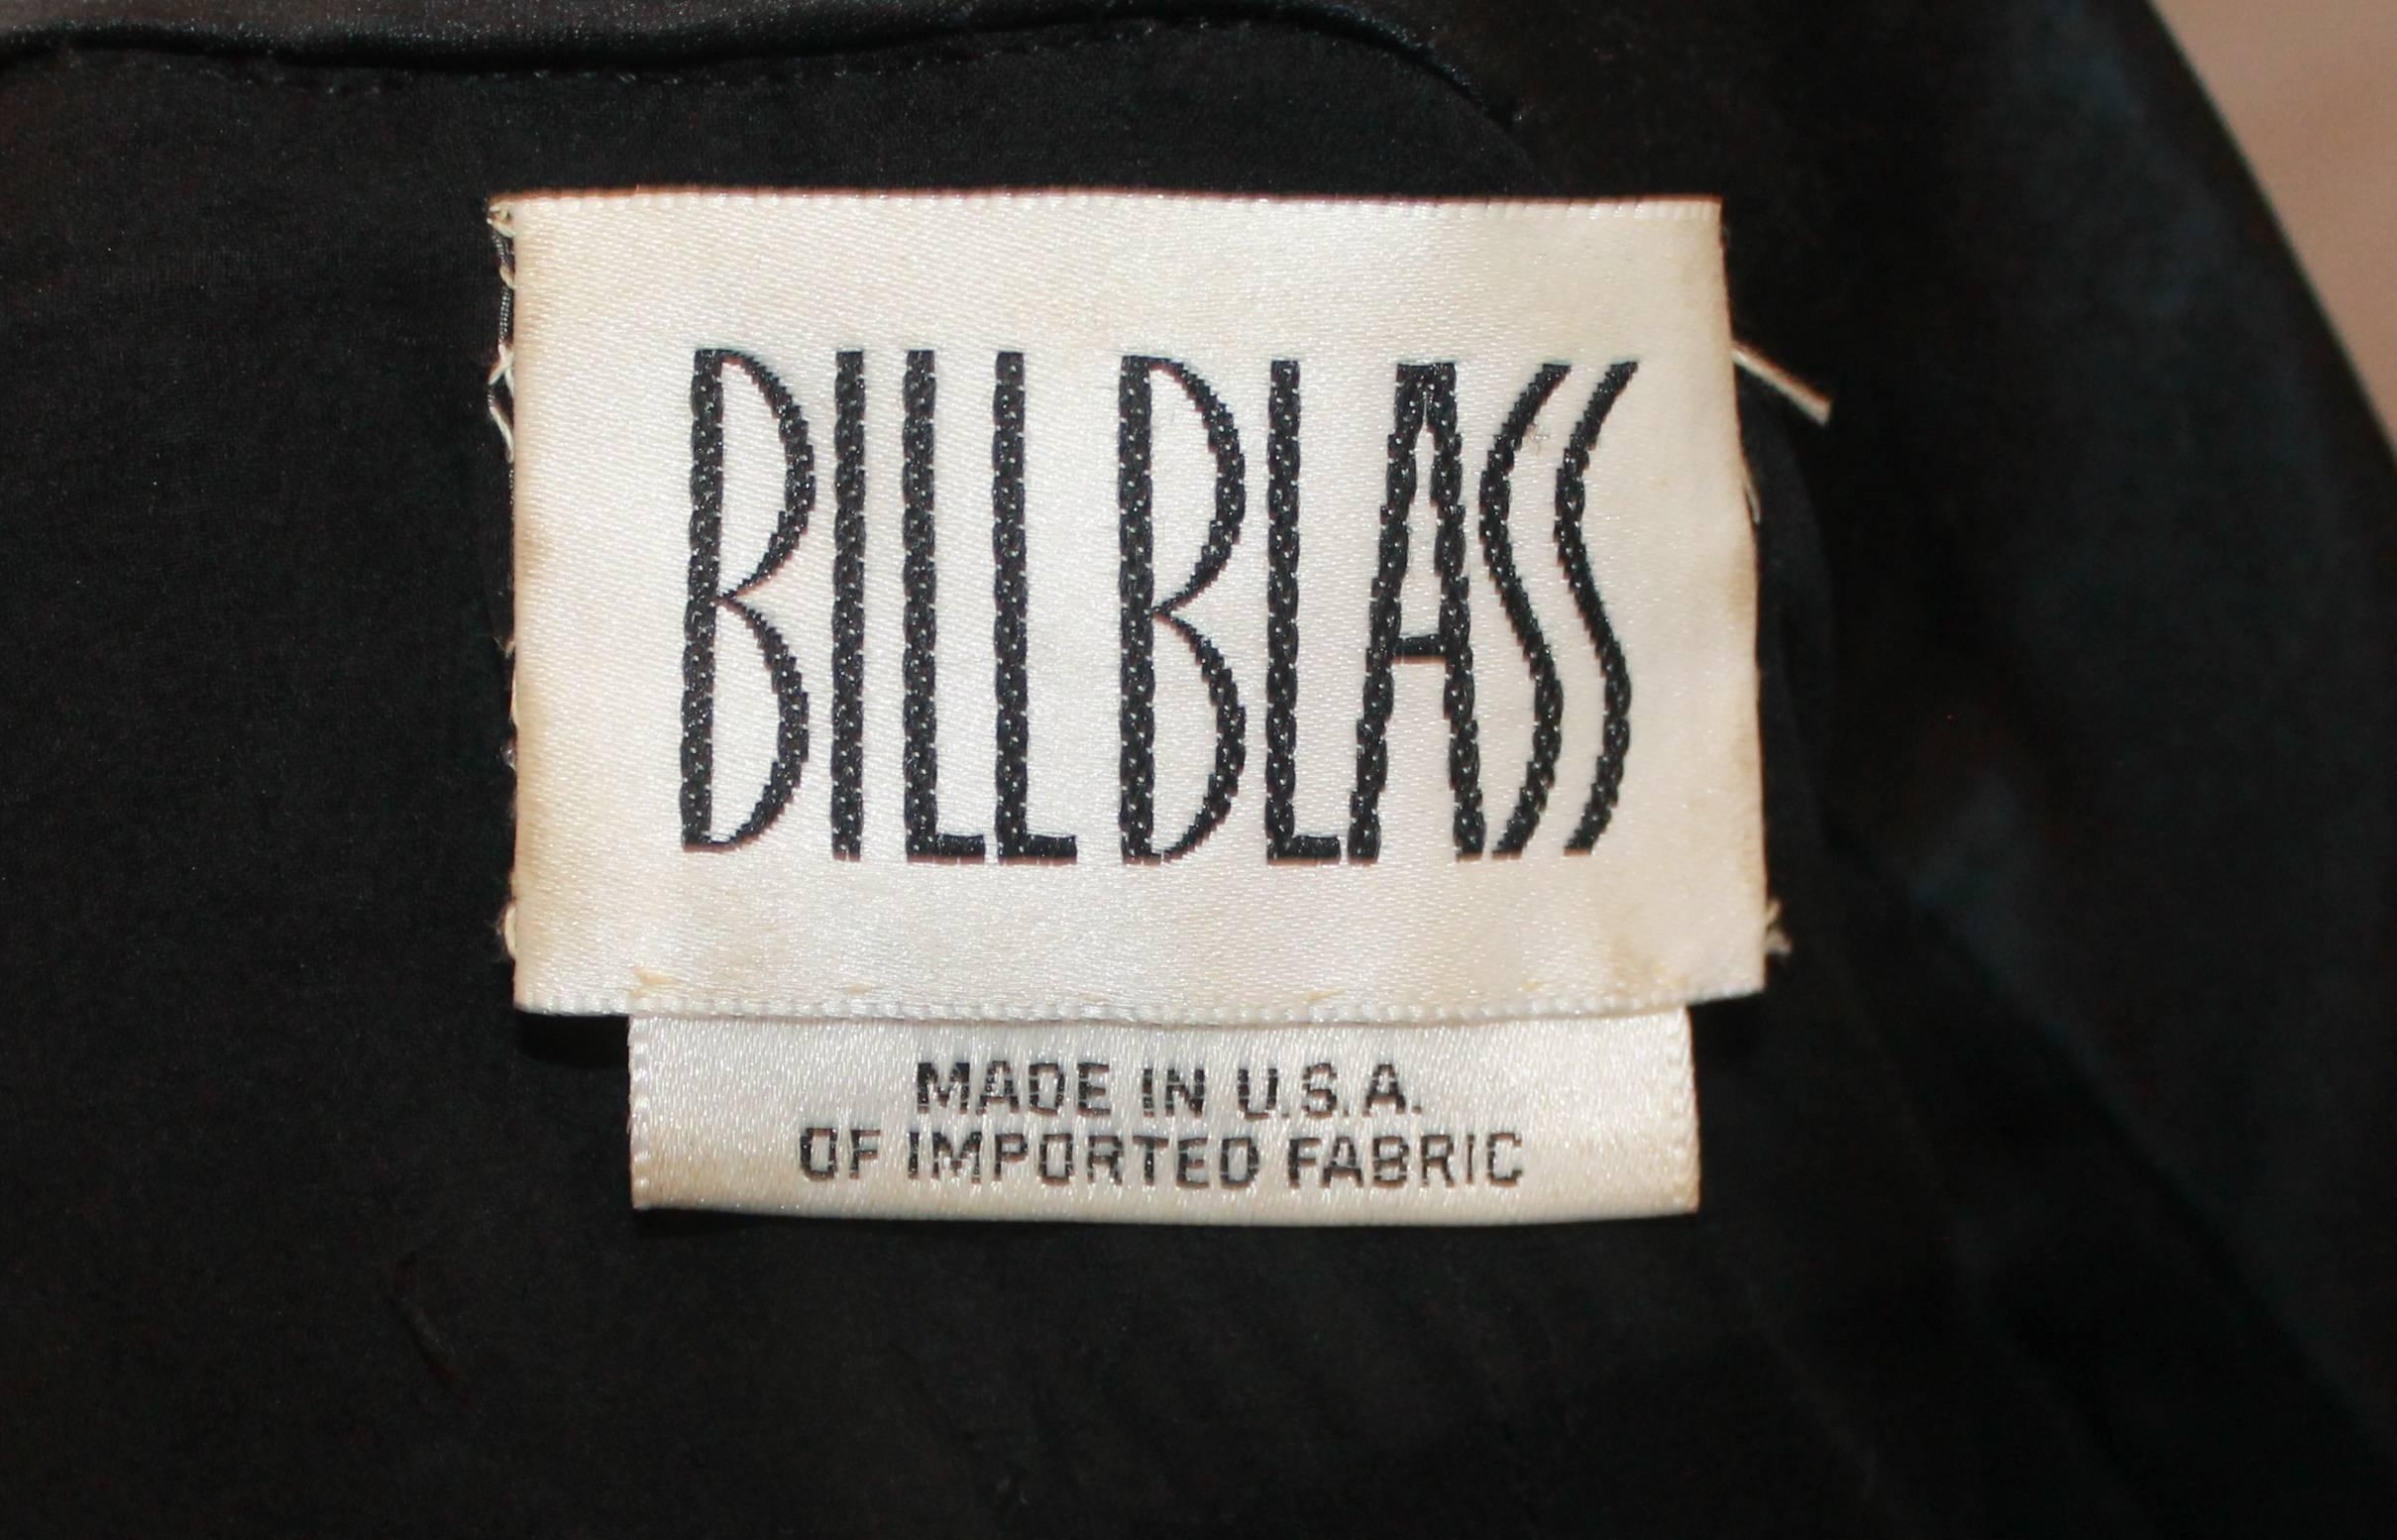 Bill Blass Vintage Black Tuxedo Style Soutache Lace Pant Suit - 8 - Circa 1990's 2